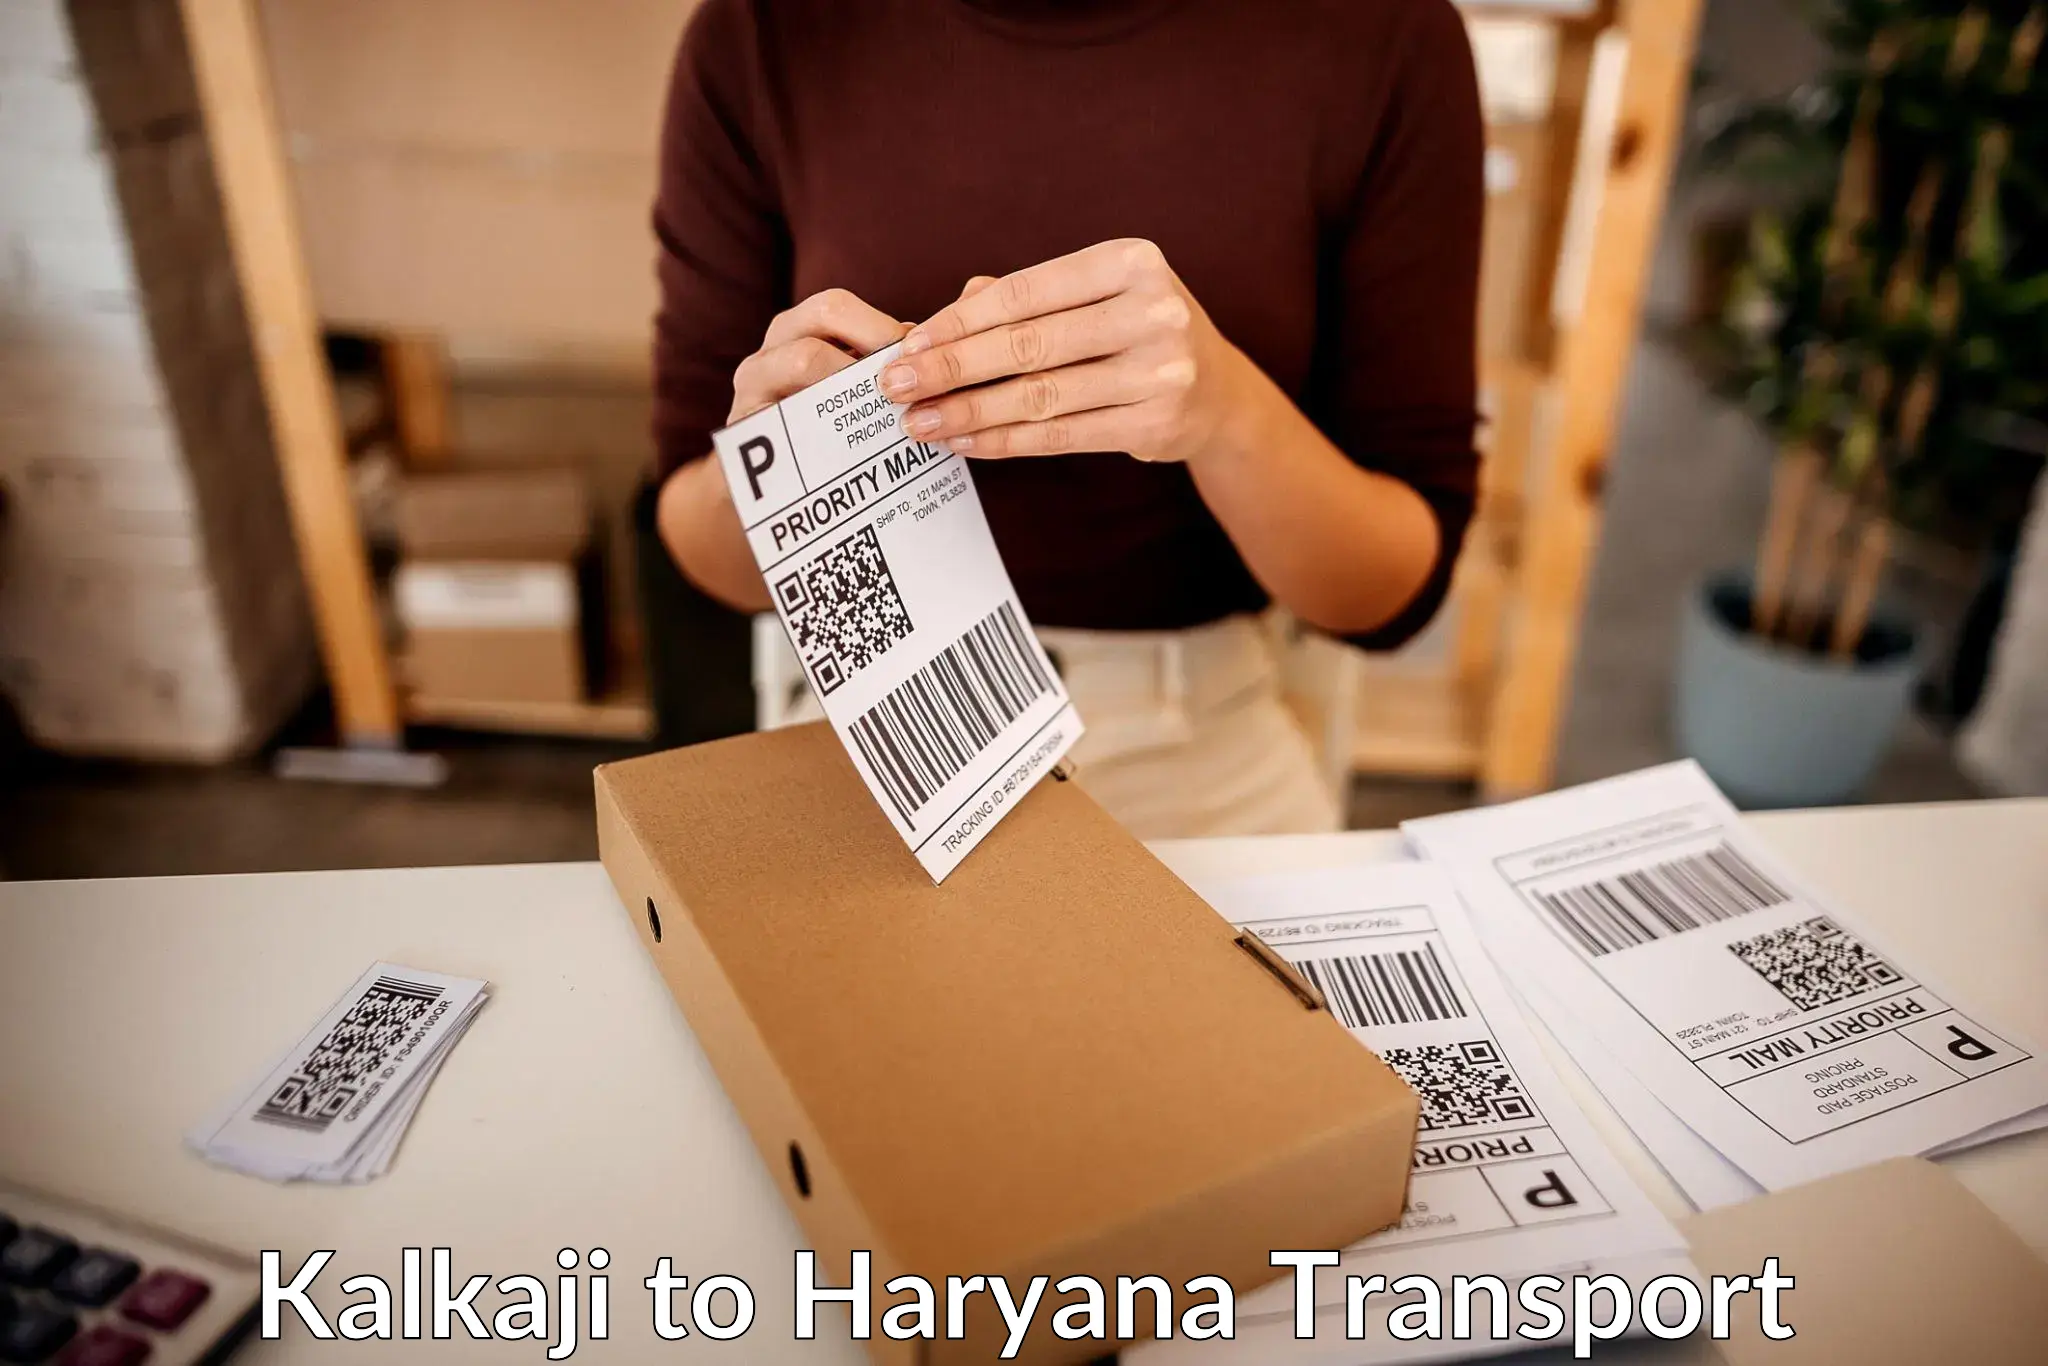 Commercial transport service Kalkaji to Gurugram